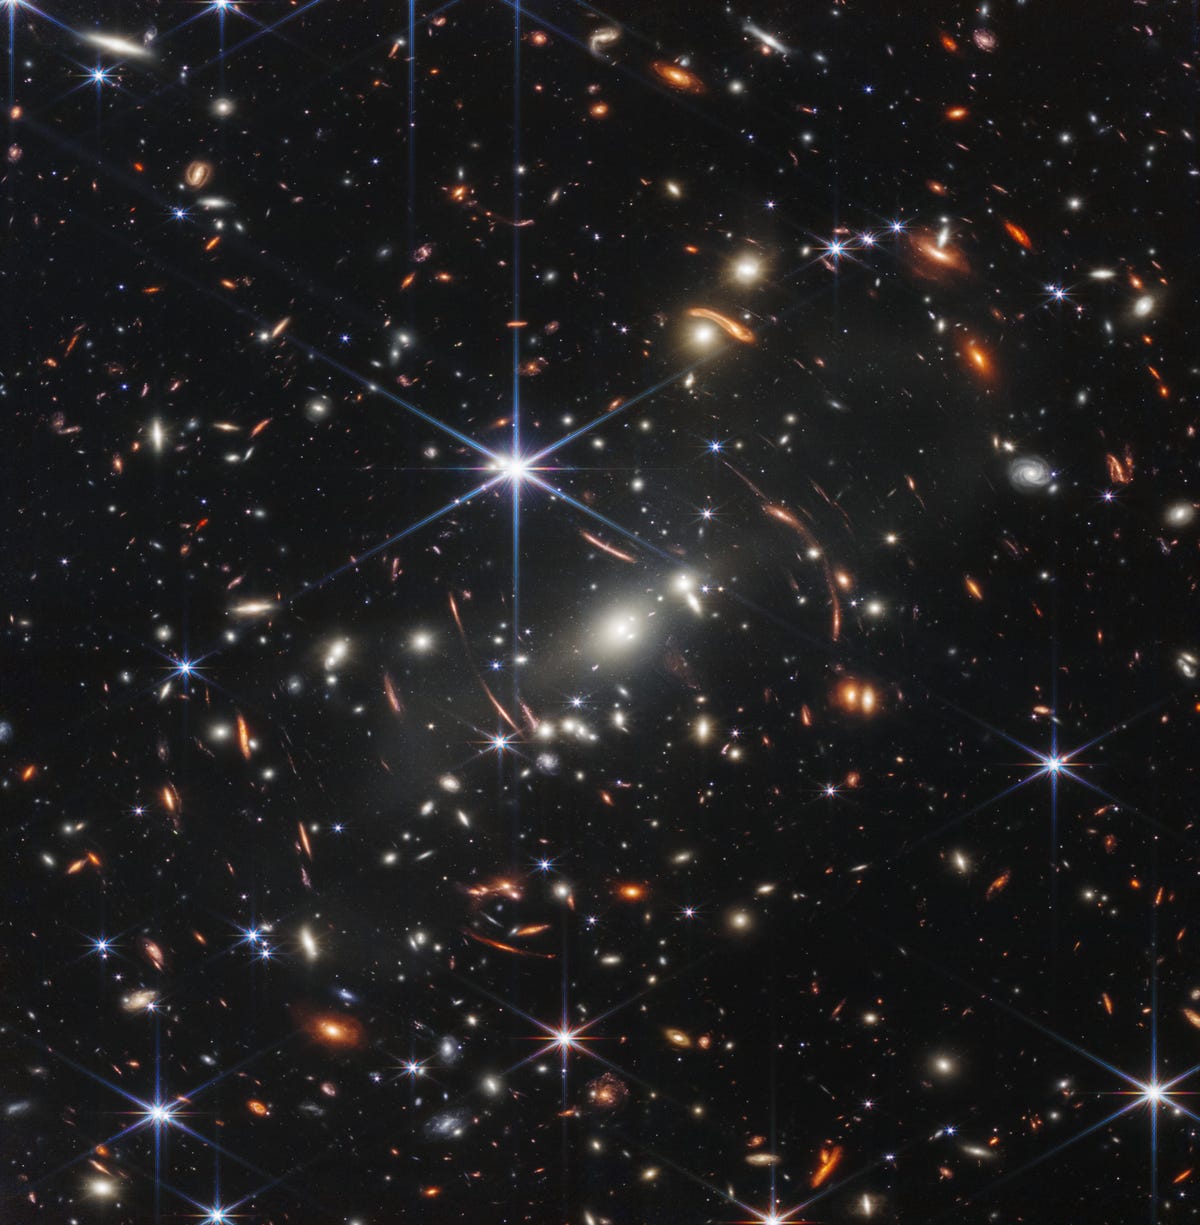 Büyük bir merkezi mavi altı köşeli yıldız ile uzayın karanlığına karşı binlerce galaksiden oluşan bir alan.